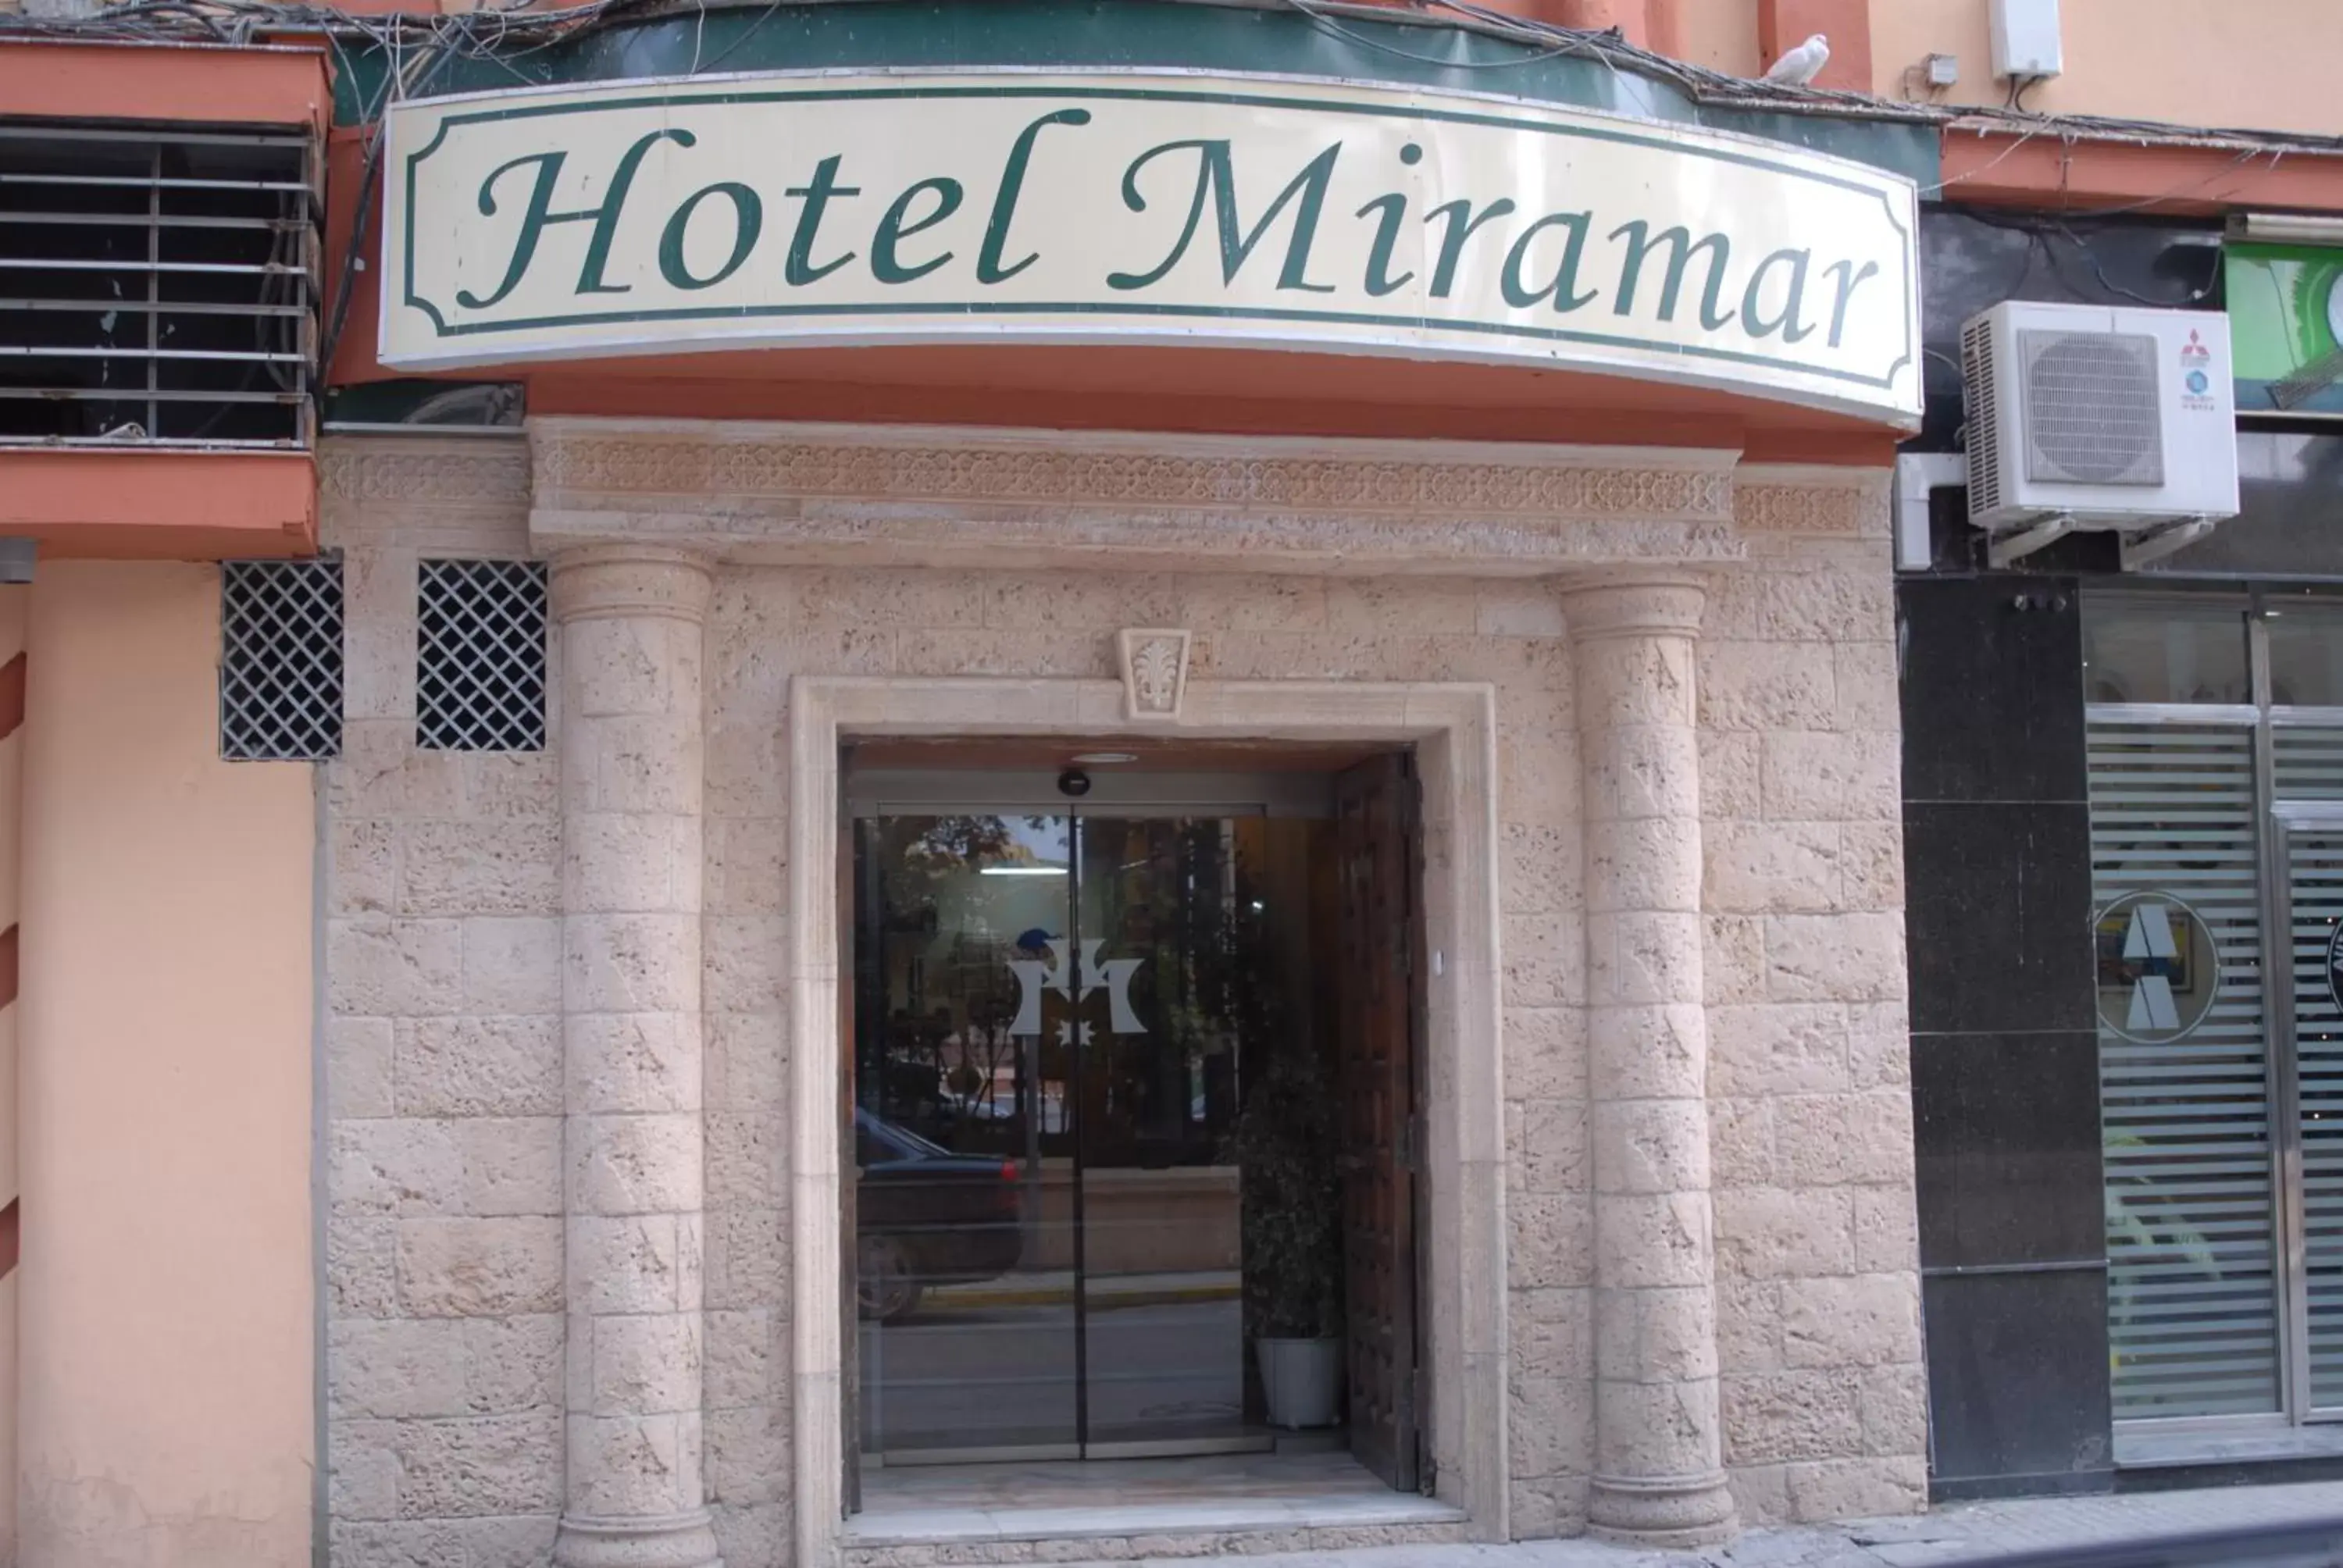 Facade/entrance in Hotel Miramar